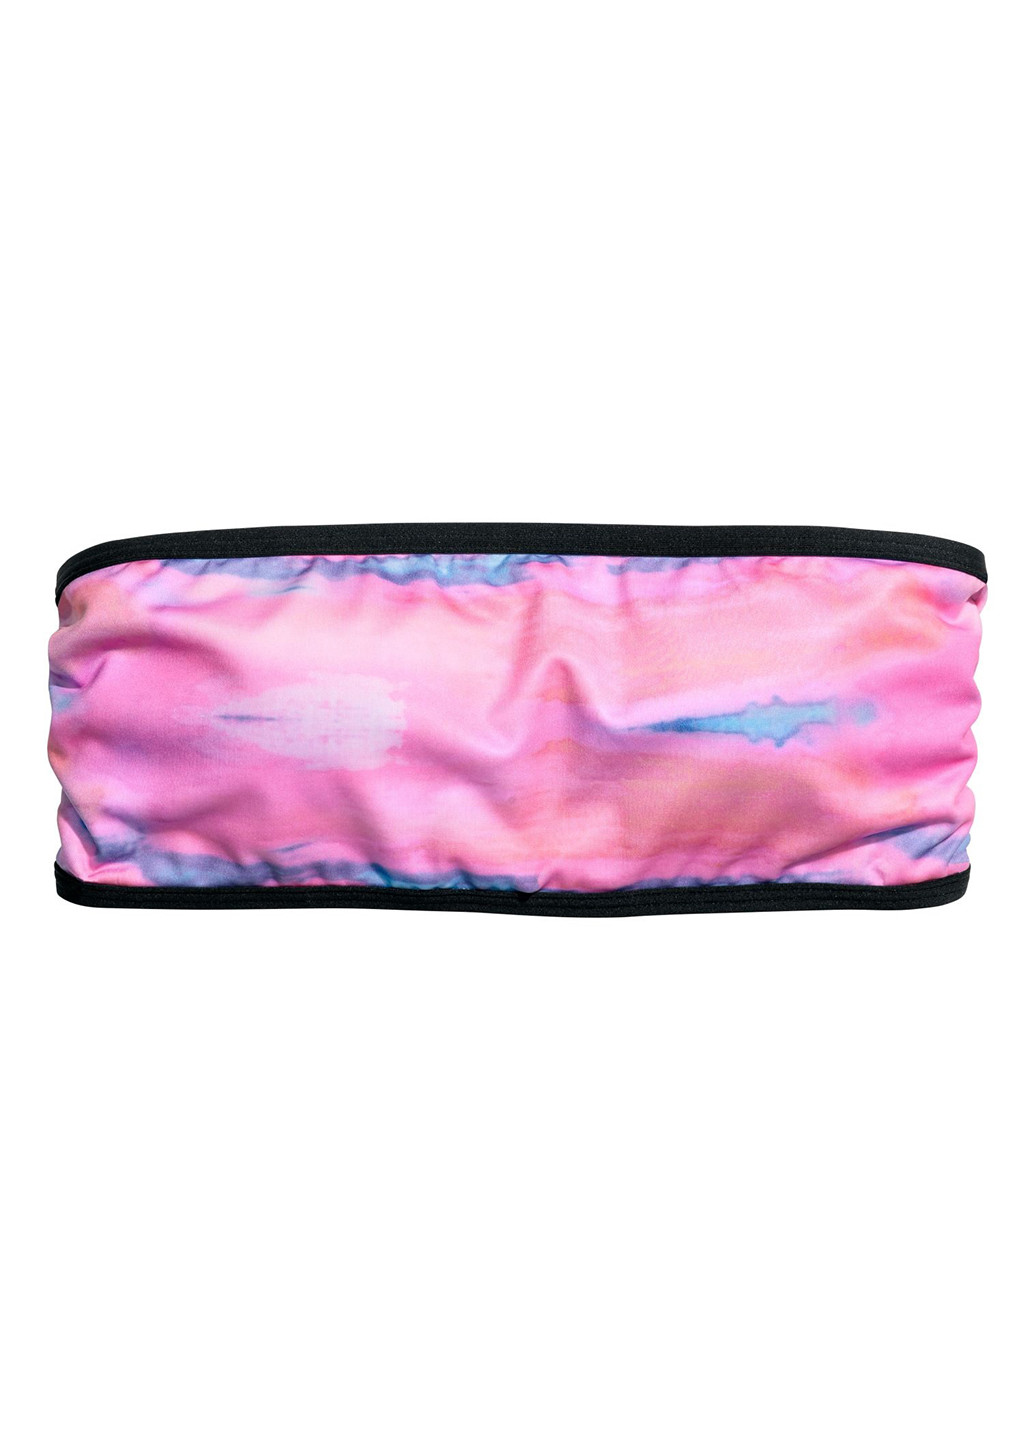 Розово-лиловый летний купальник (лиф, трусы) бикини, бандо H&M